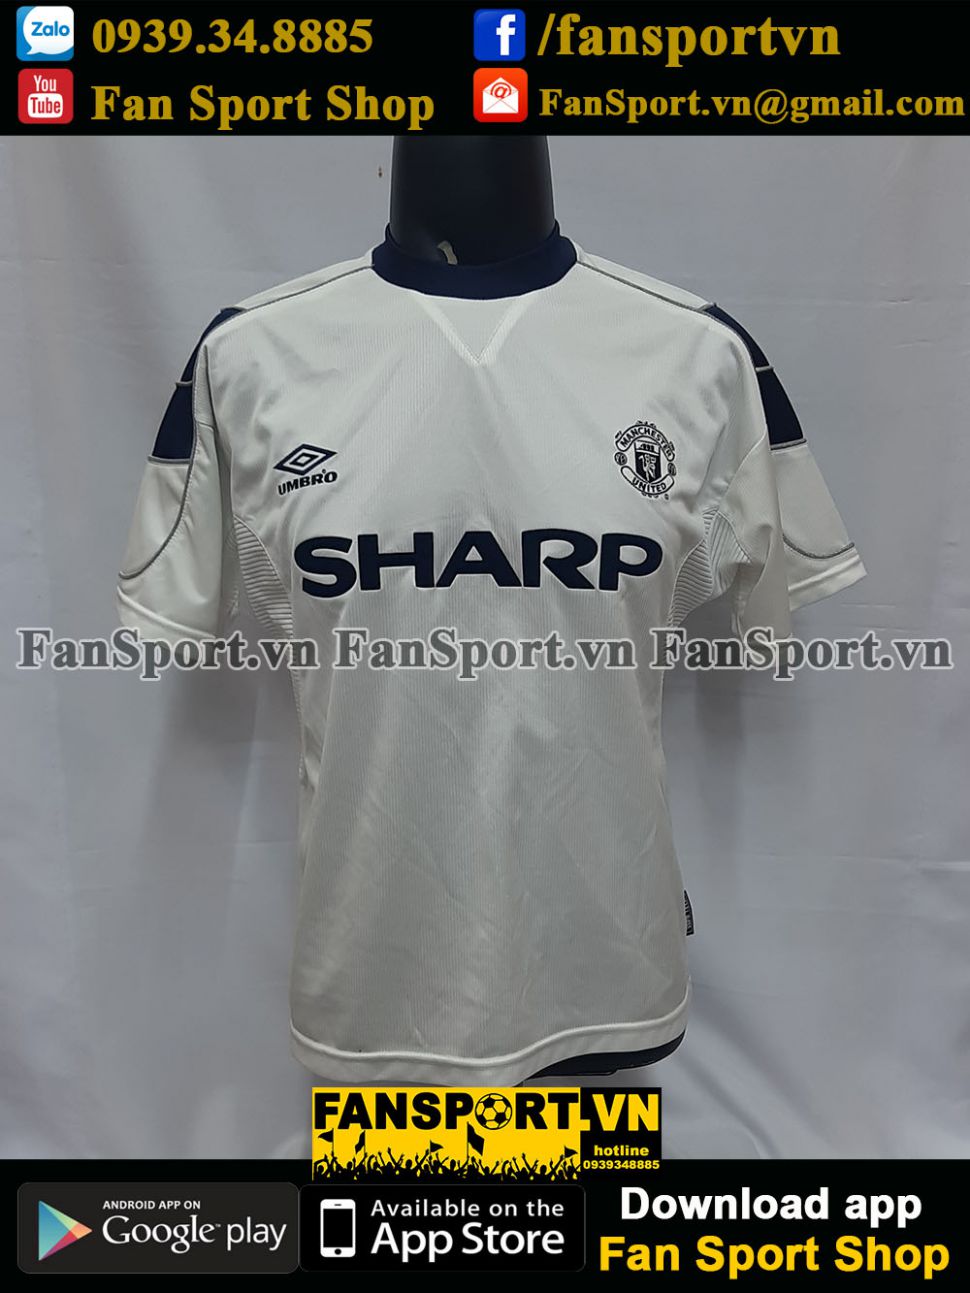 Áo đấu Treble #99 Manchester United 1999-2000 third white shirt jersey